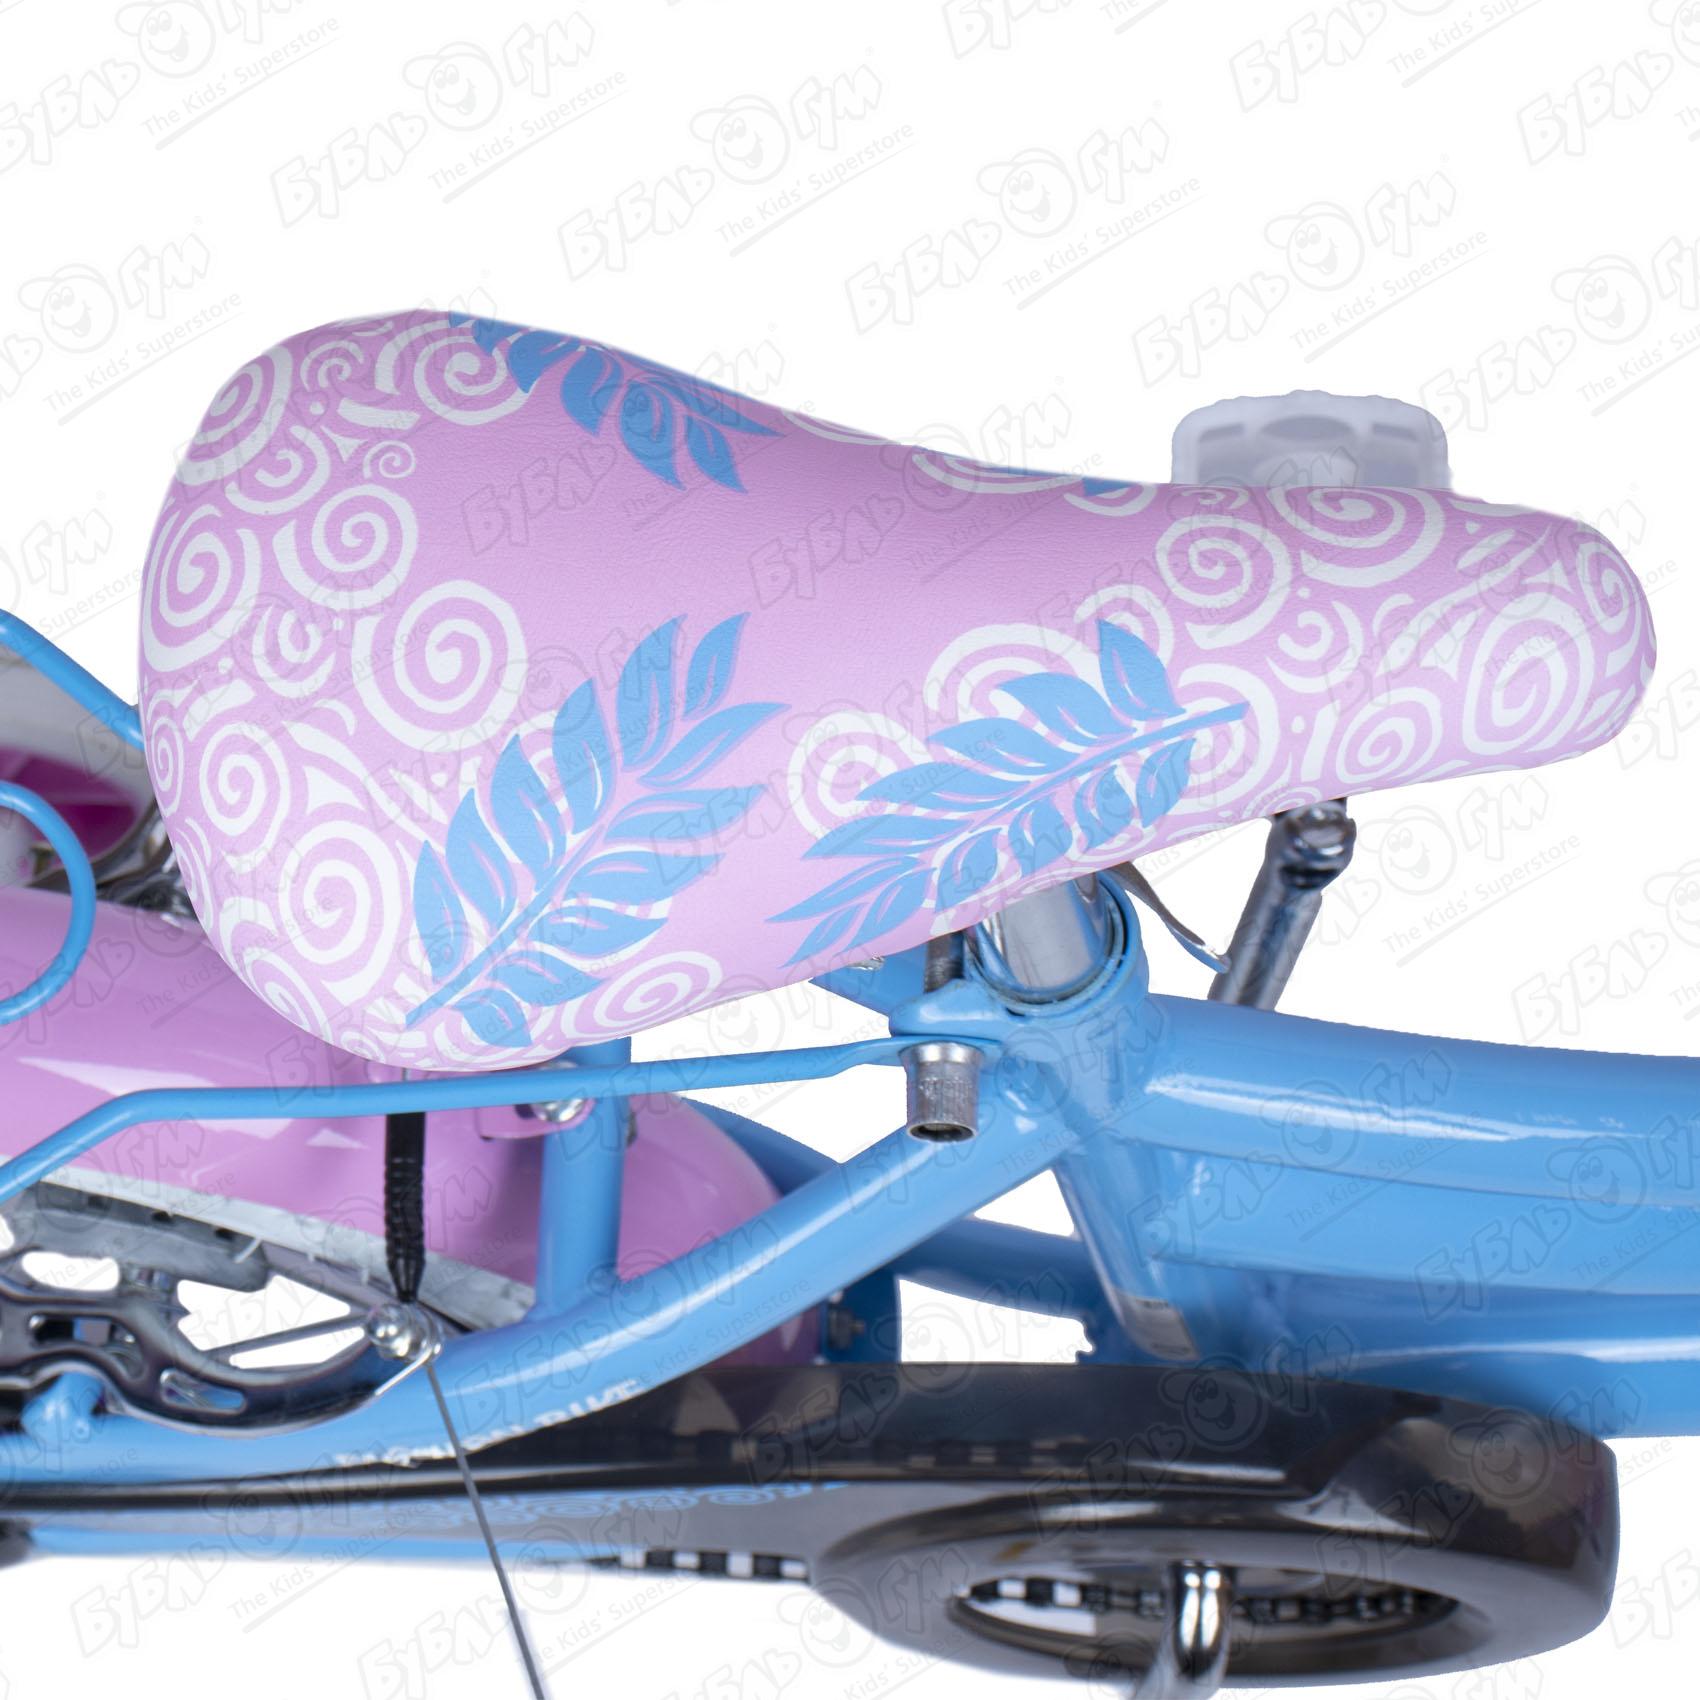 Велосипед Champ Pro детский G16 розово-фиолетовый, цвет голубой - фото 7